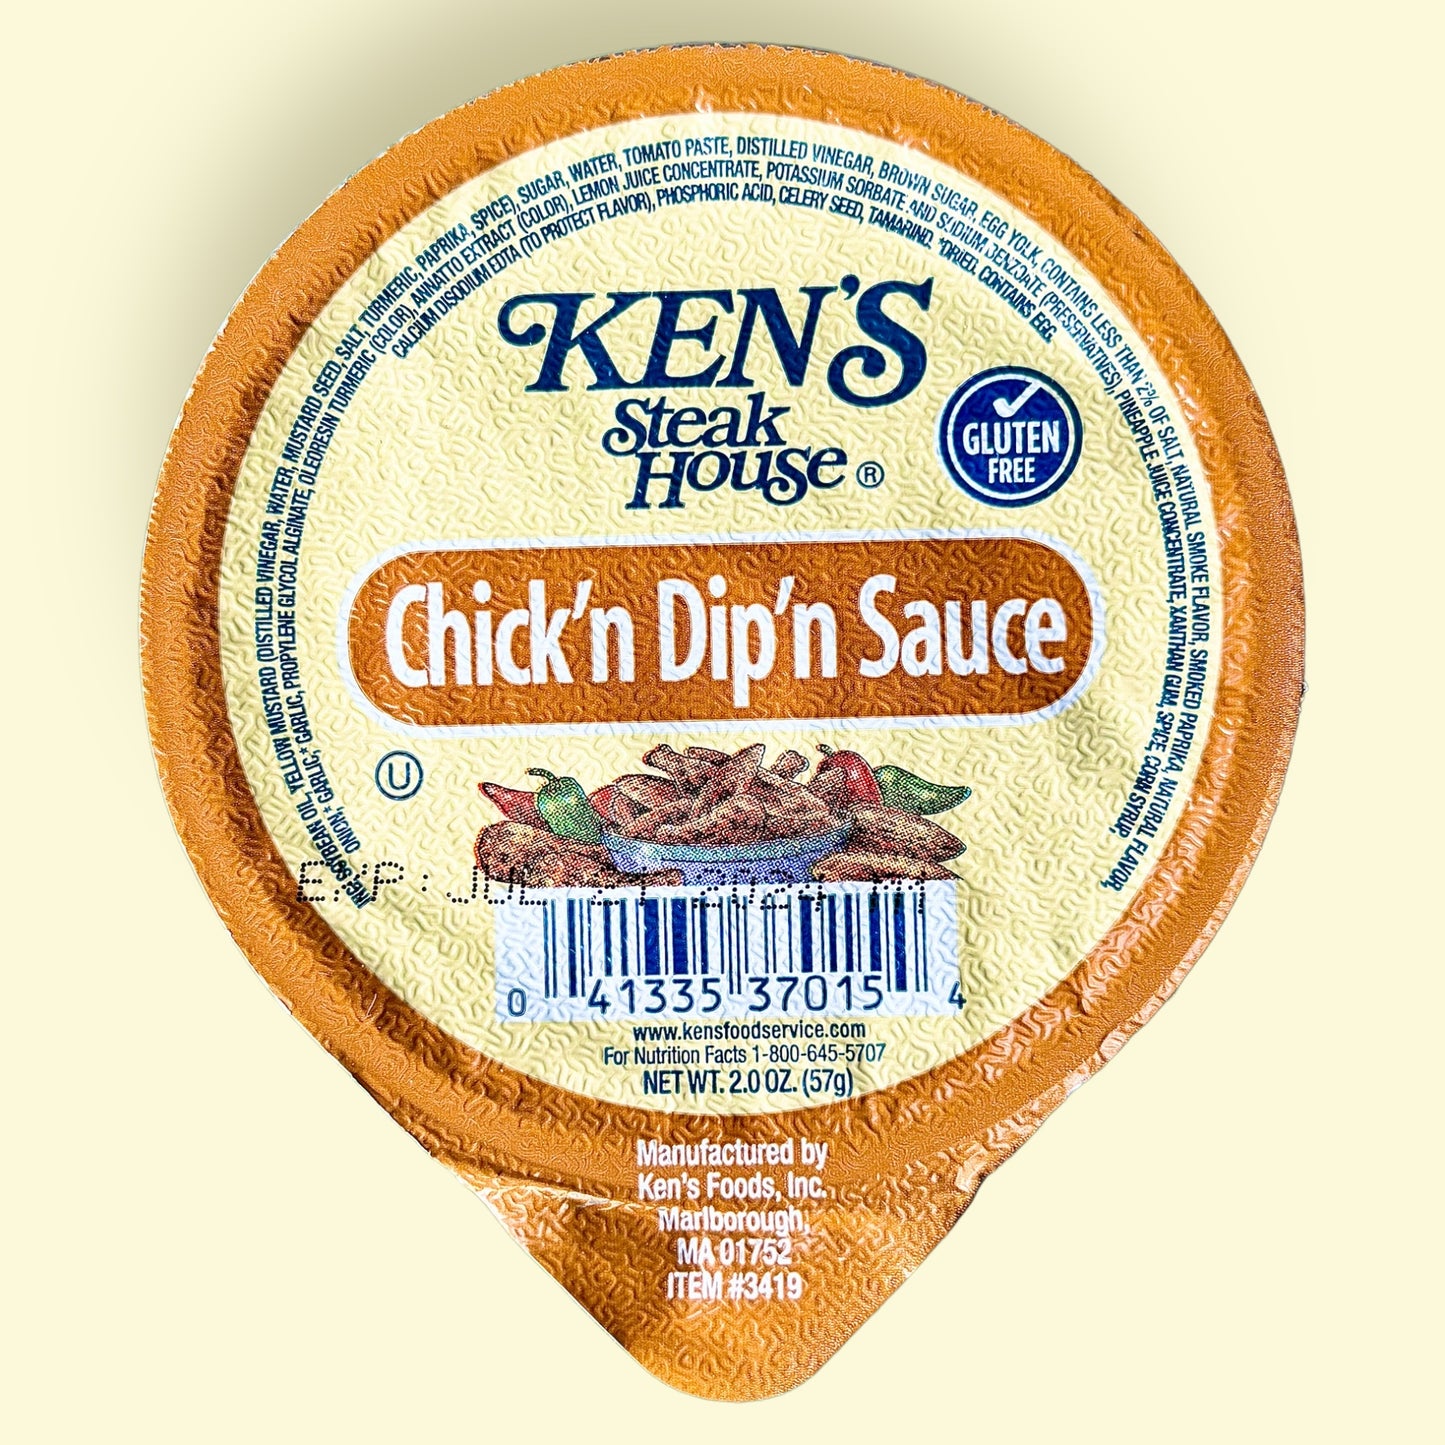 Ken's Chick'n Dip'n Sauce